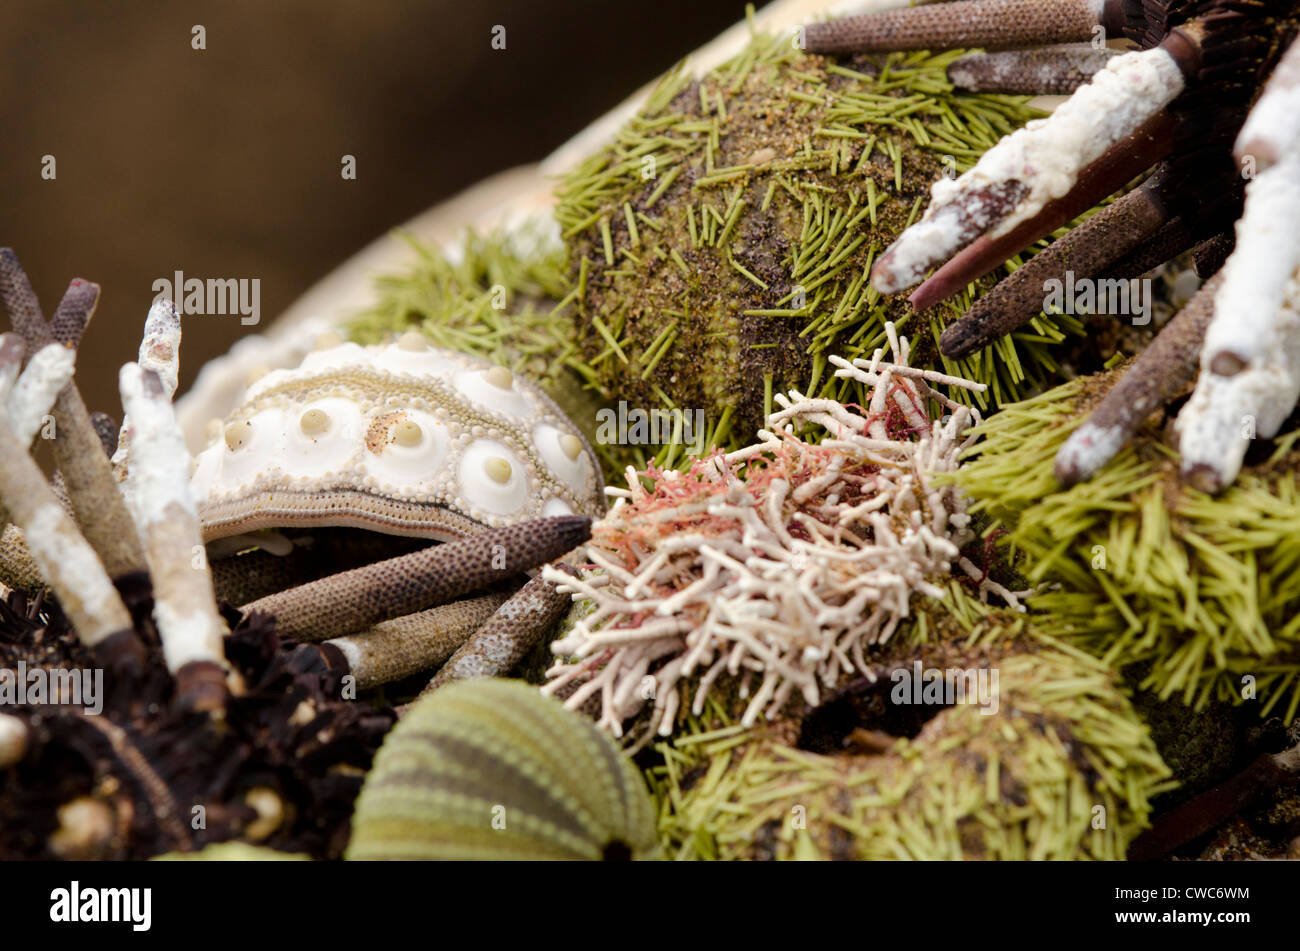 Ecuador, Galapagos, Floreana, Punta Cormoran. Group of sea shells including Green sea urchin. Stock Photo